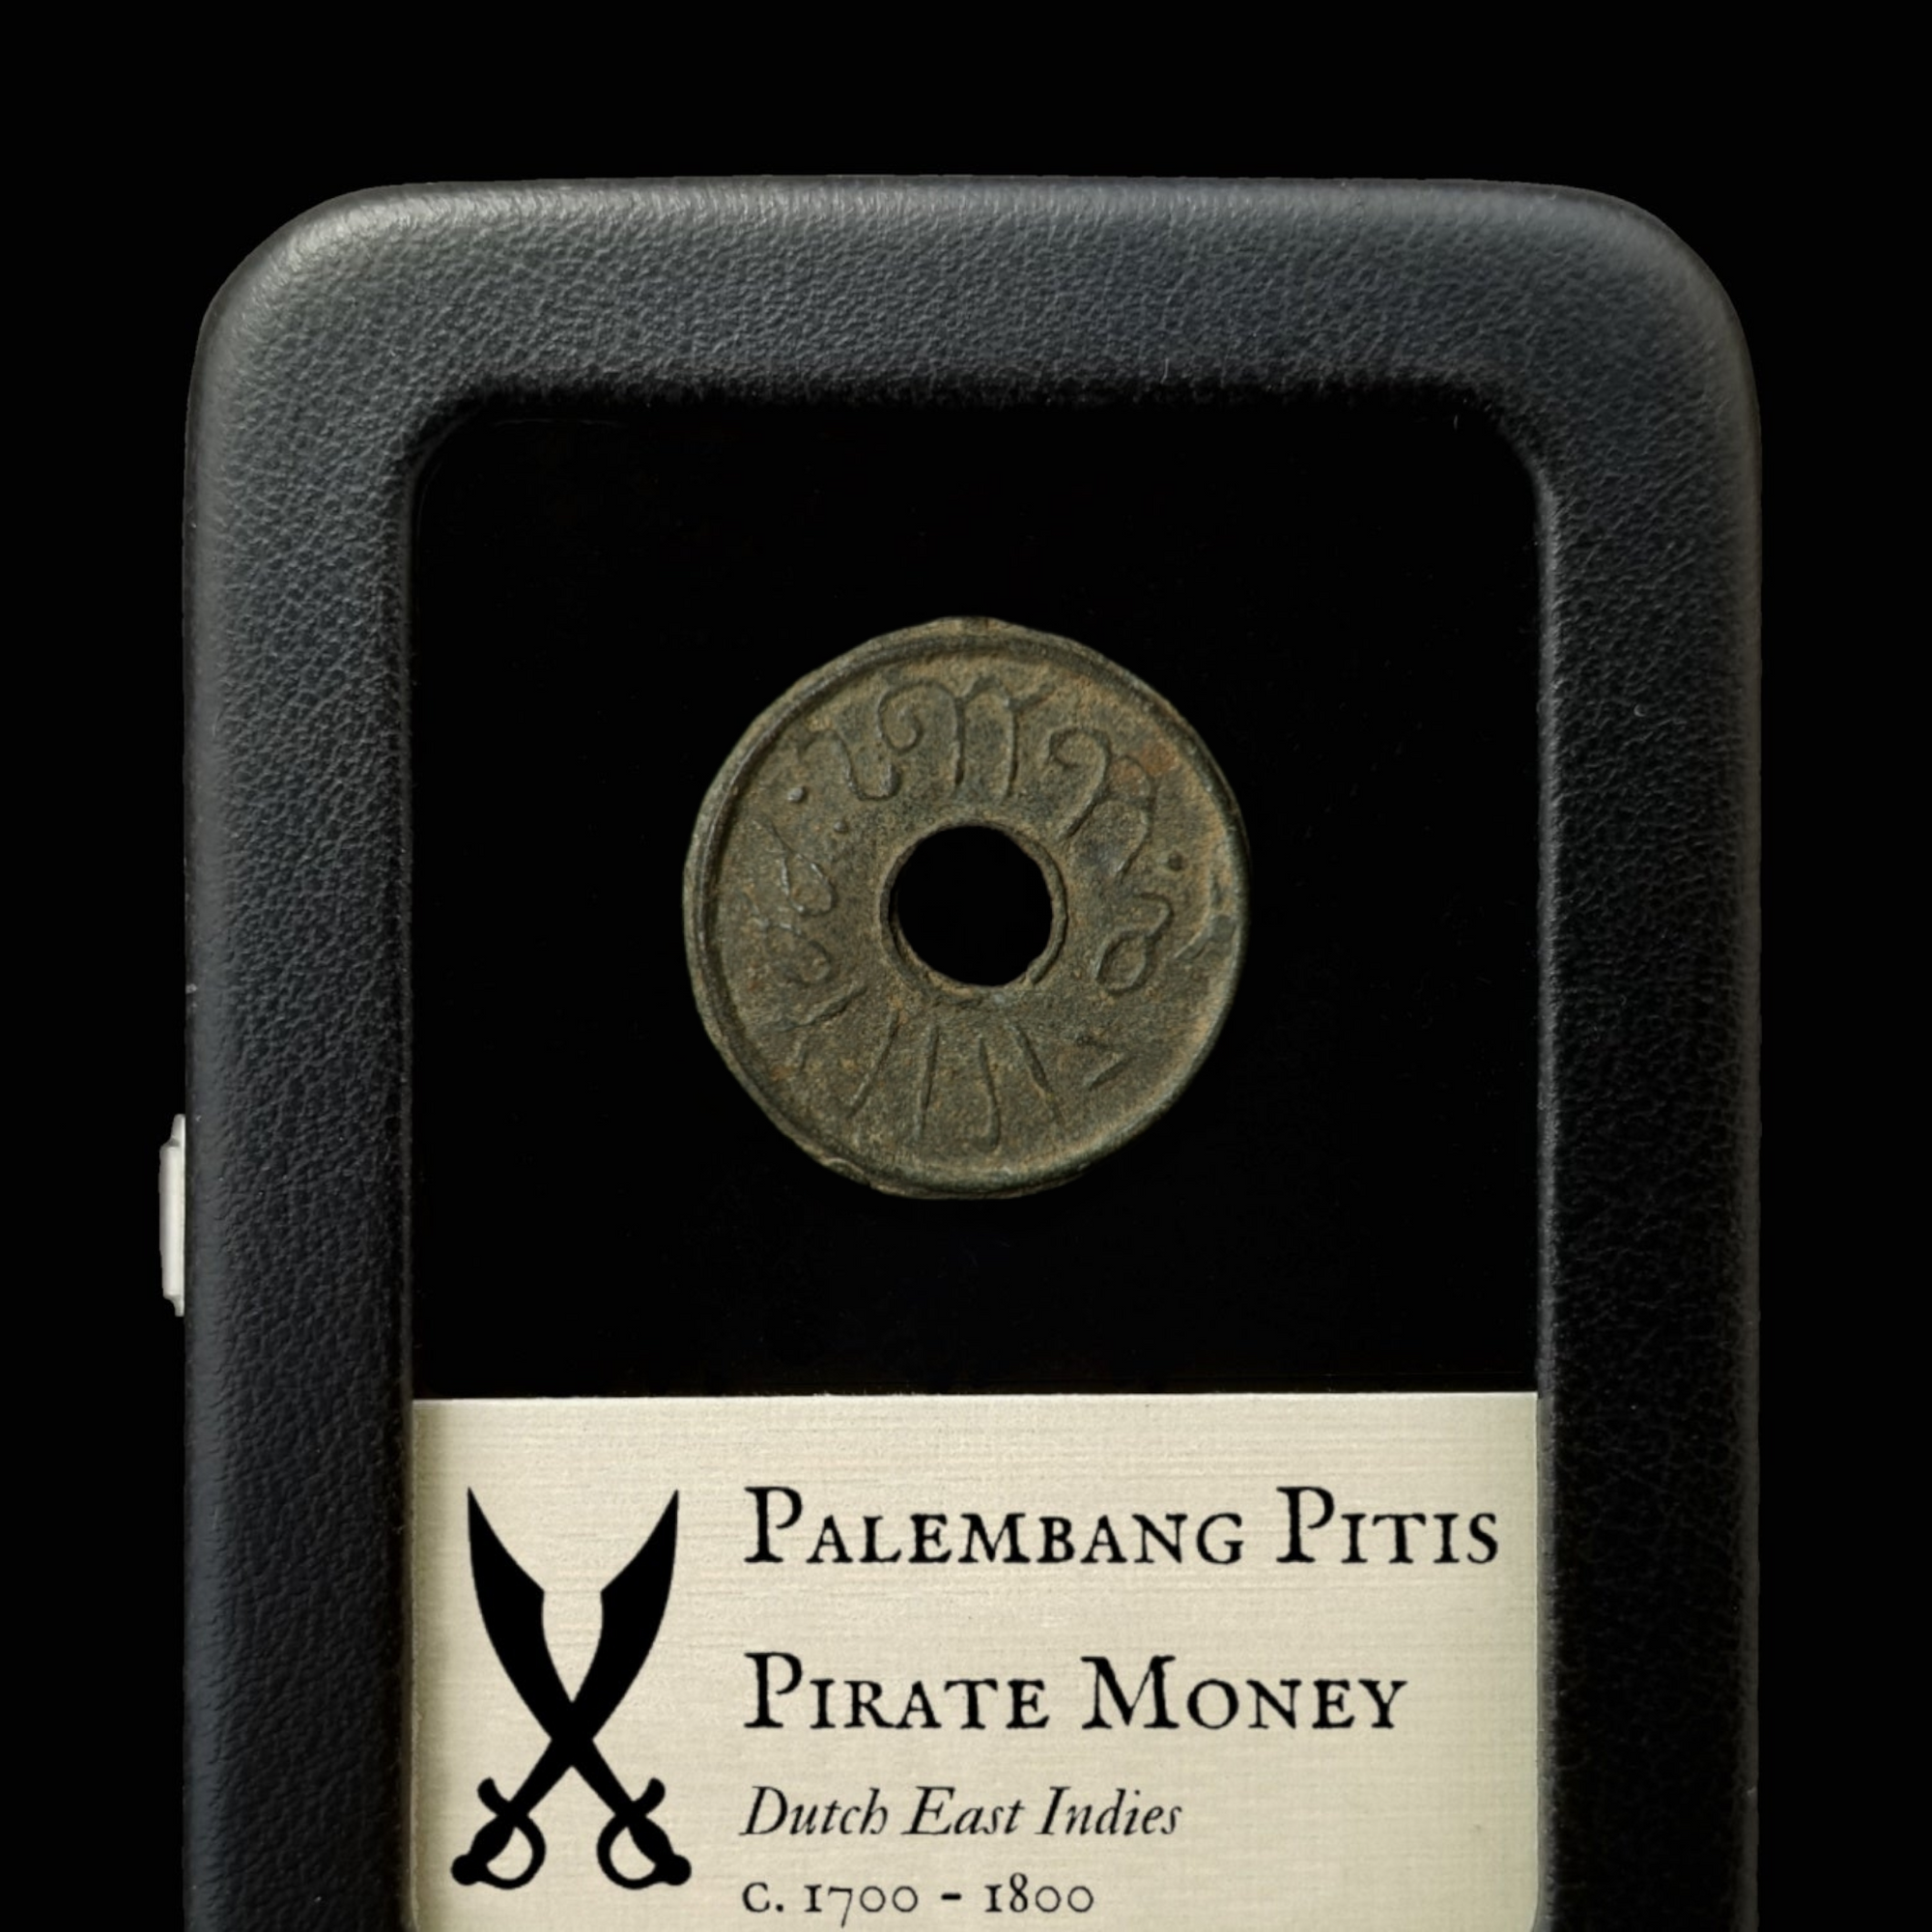 Pirate Money, Palembang Pitis - 1700's - Southeast Asia